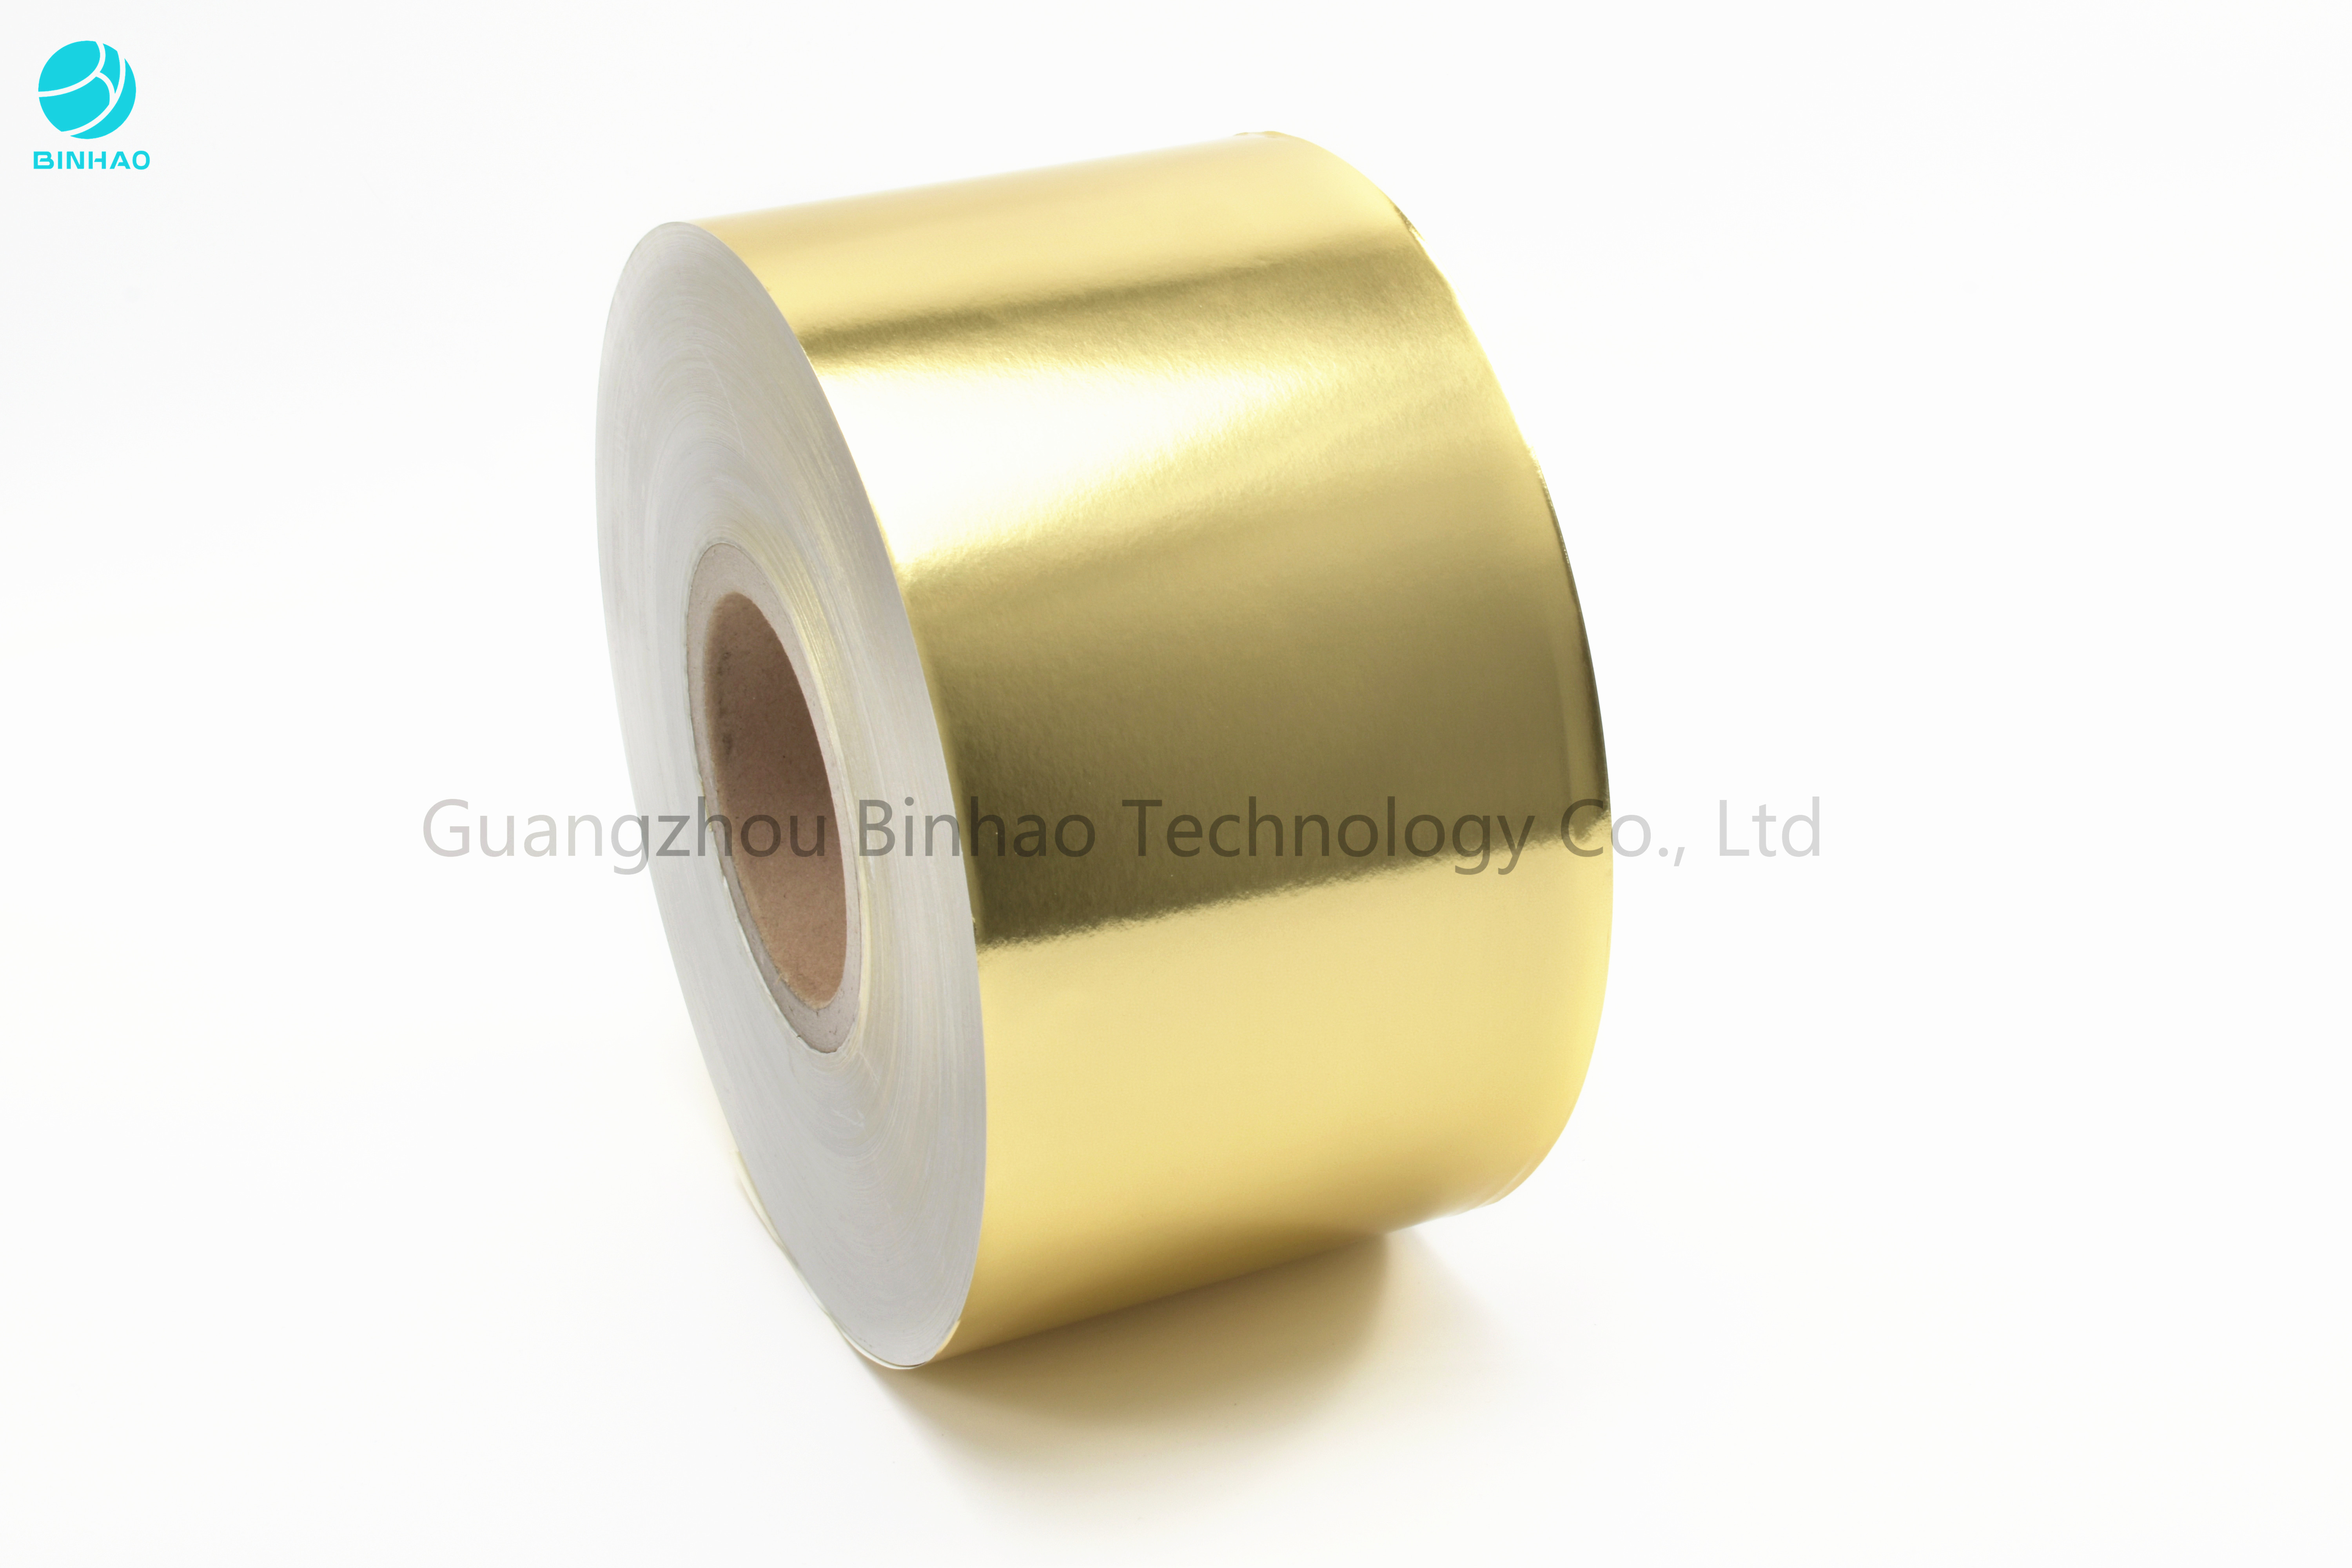 Silber-backendes Aluminiumfolie-Papier des Gold50g für Zigaretten-Paket-innere Zwischenlagen-Schokoladen-Verpackung